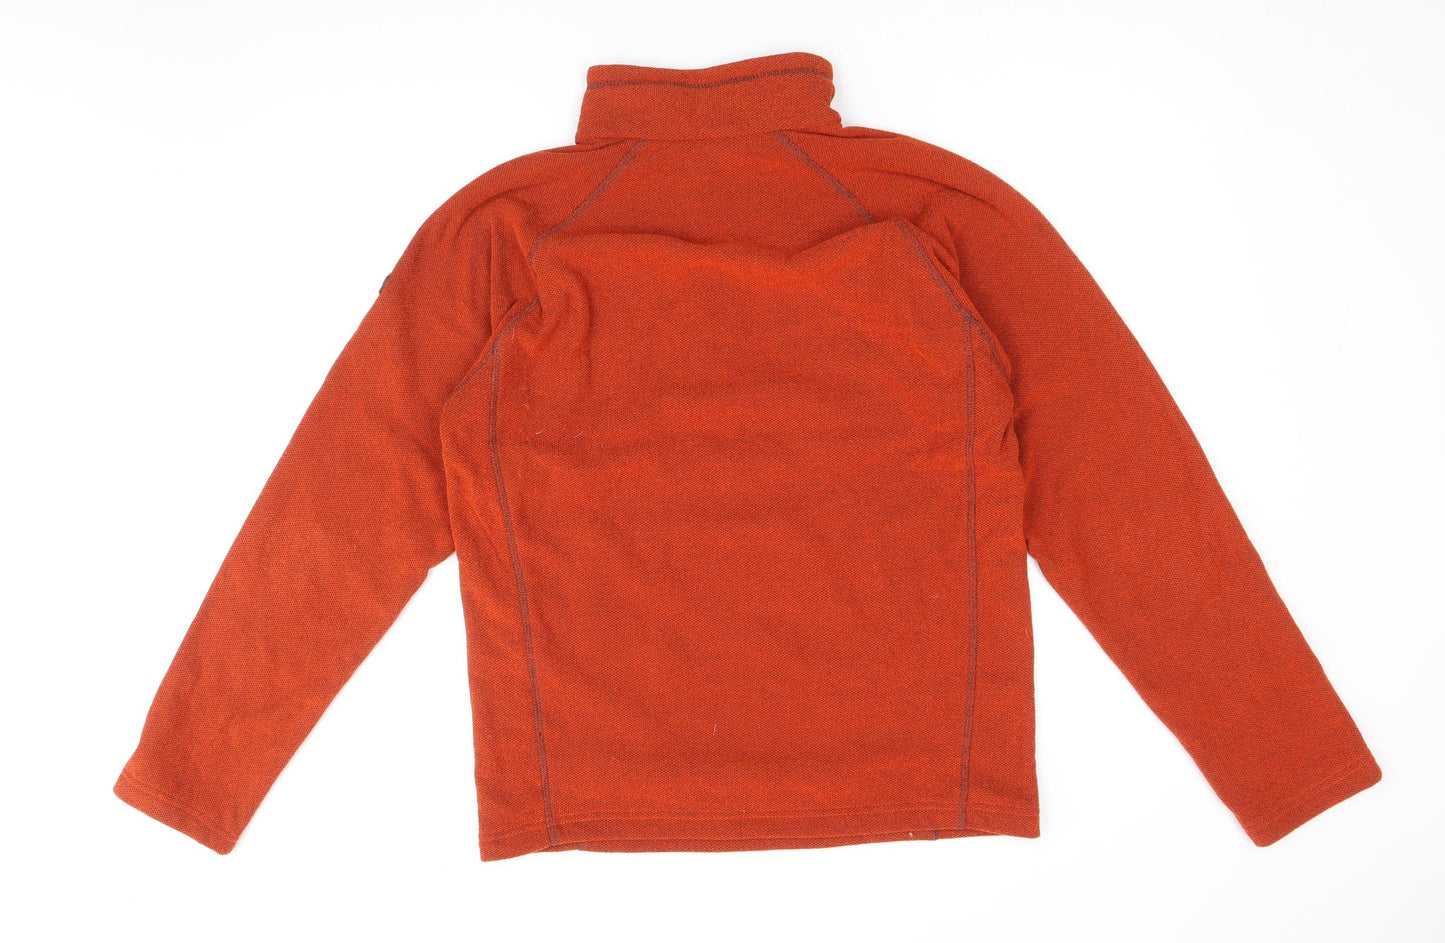 Regatta Mens Orange Polyester Pullover Sweatshirt Size S